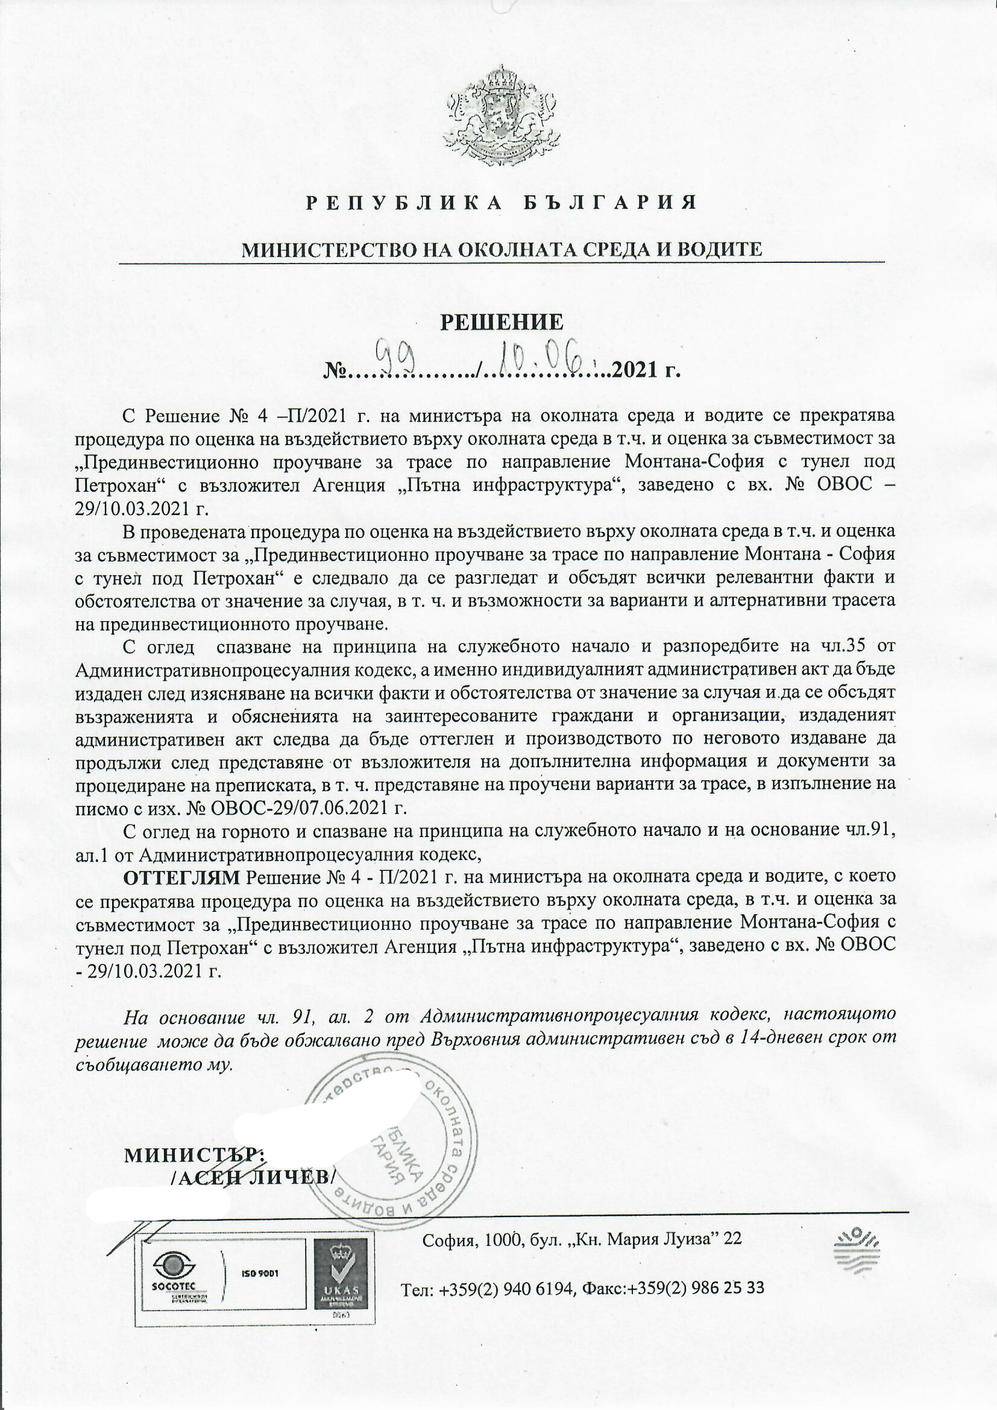 Министър Личев отмени решението за прекратяване на процедурата по ОВОС за трасето през прохода Петрохан